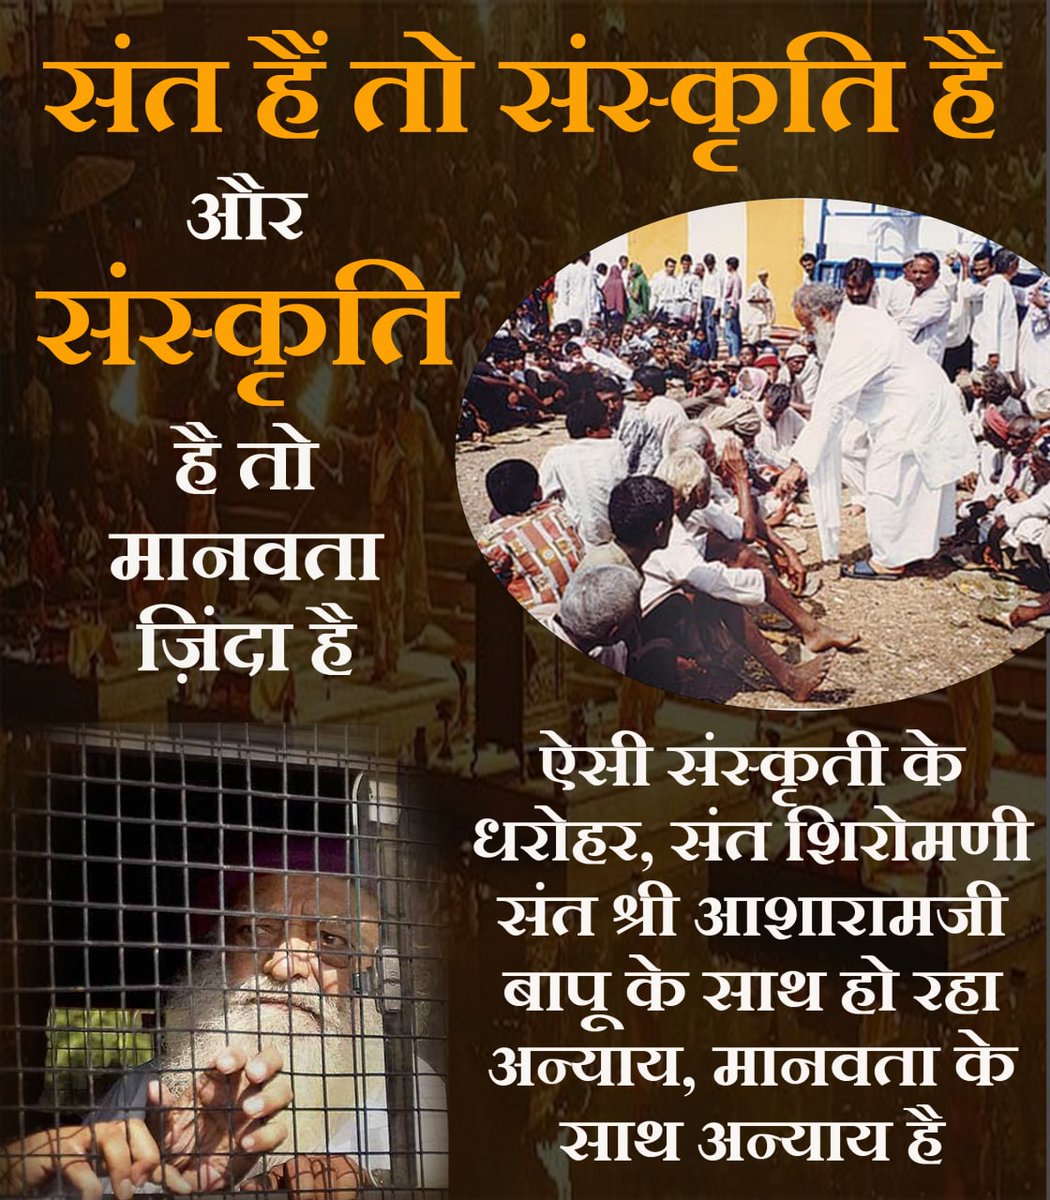 @gdshariom जी हाँ, गणेश जी, Sant Shri Asharamji Bapu को फर्जी केस में फसाकर, जेल में प्रताड़ित कर, Injustice किया जा रहा है।
#संत_संस्कृति_की_धरोहर